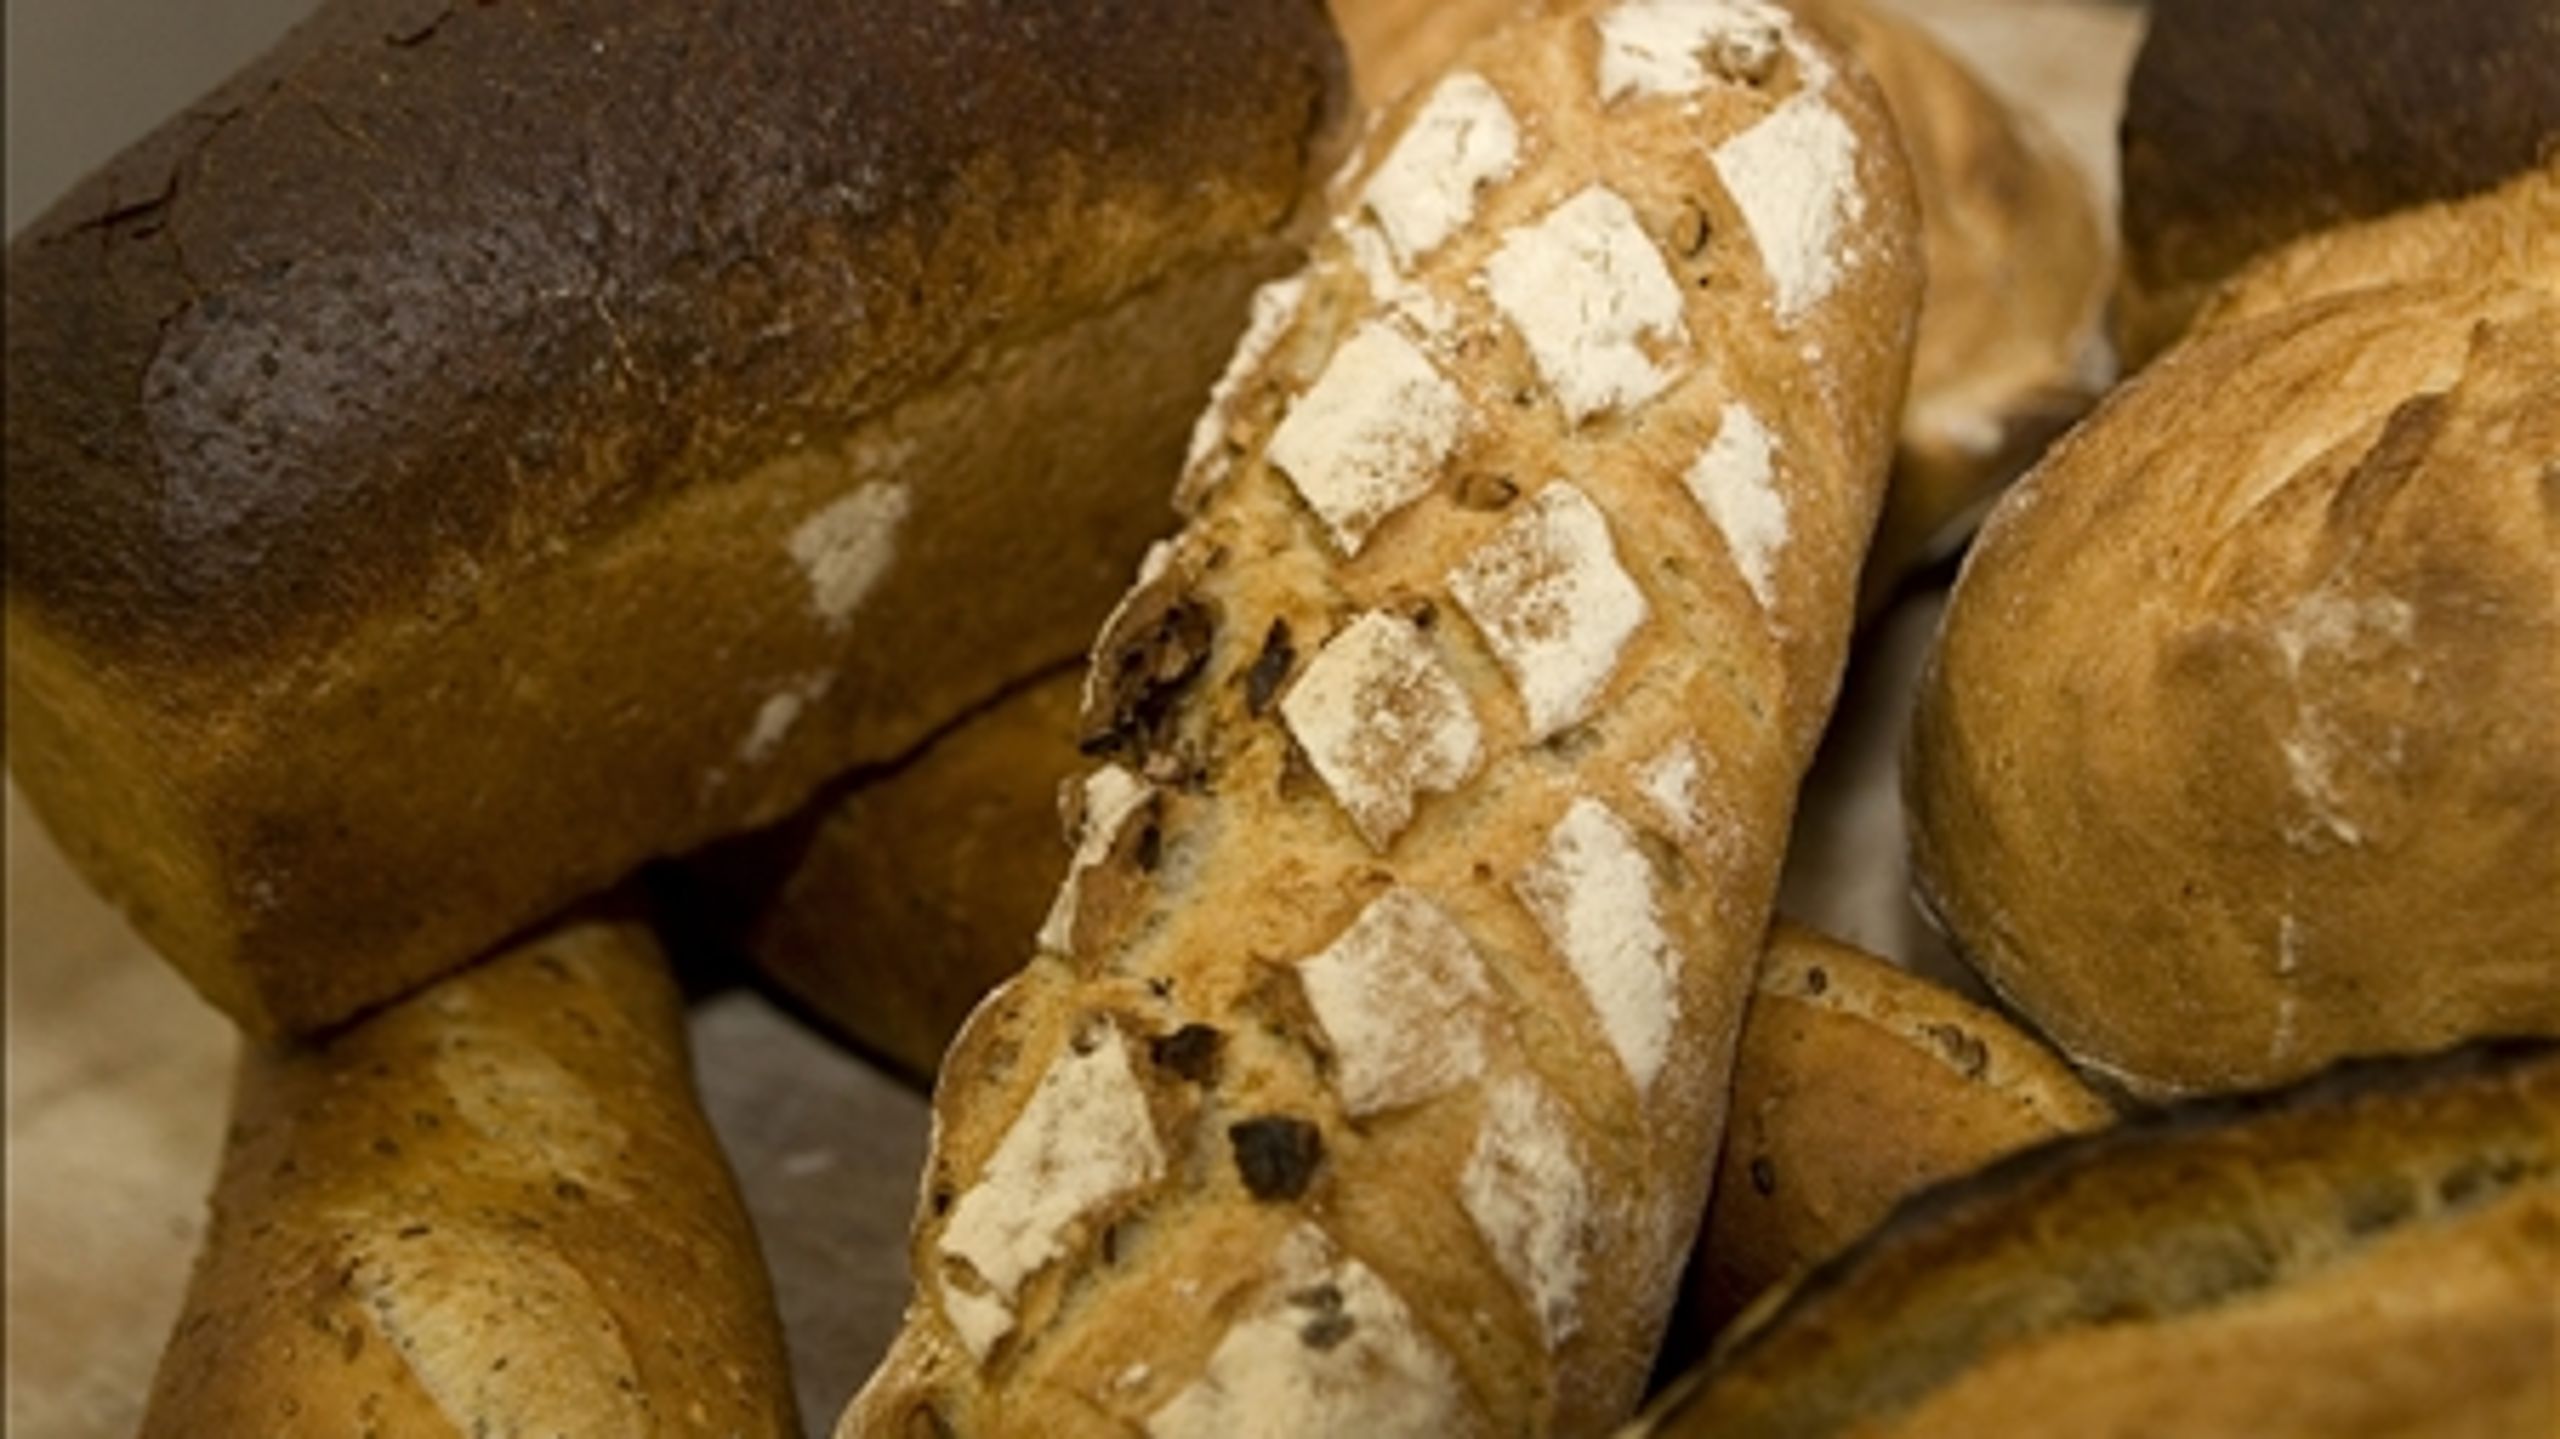 DTU Food undersøgte sidste år saltindholdet i brød og fandt, at det fortsat er alt for højt. 